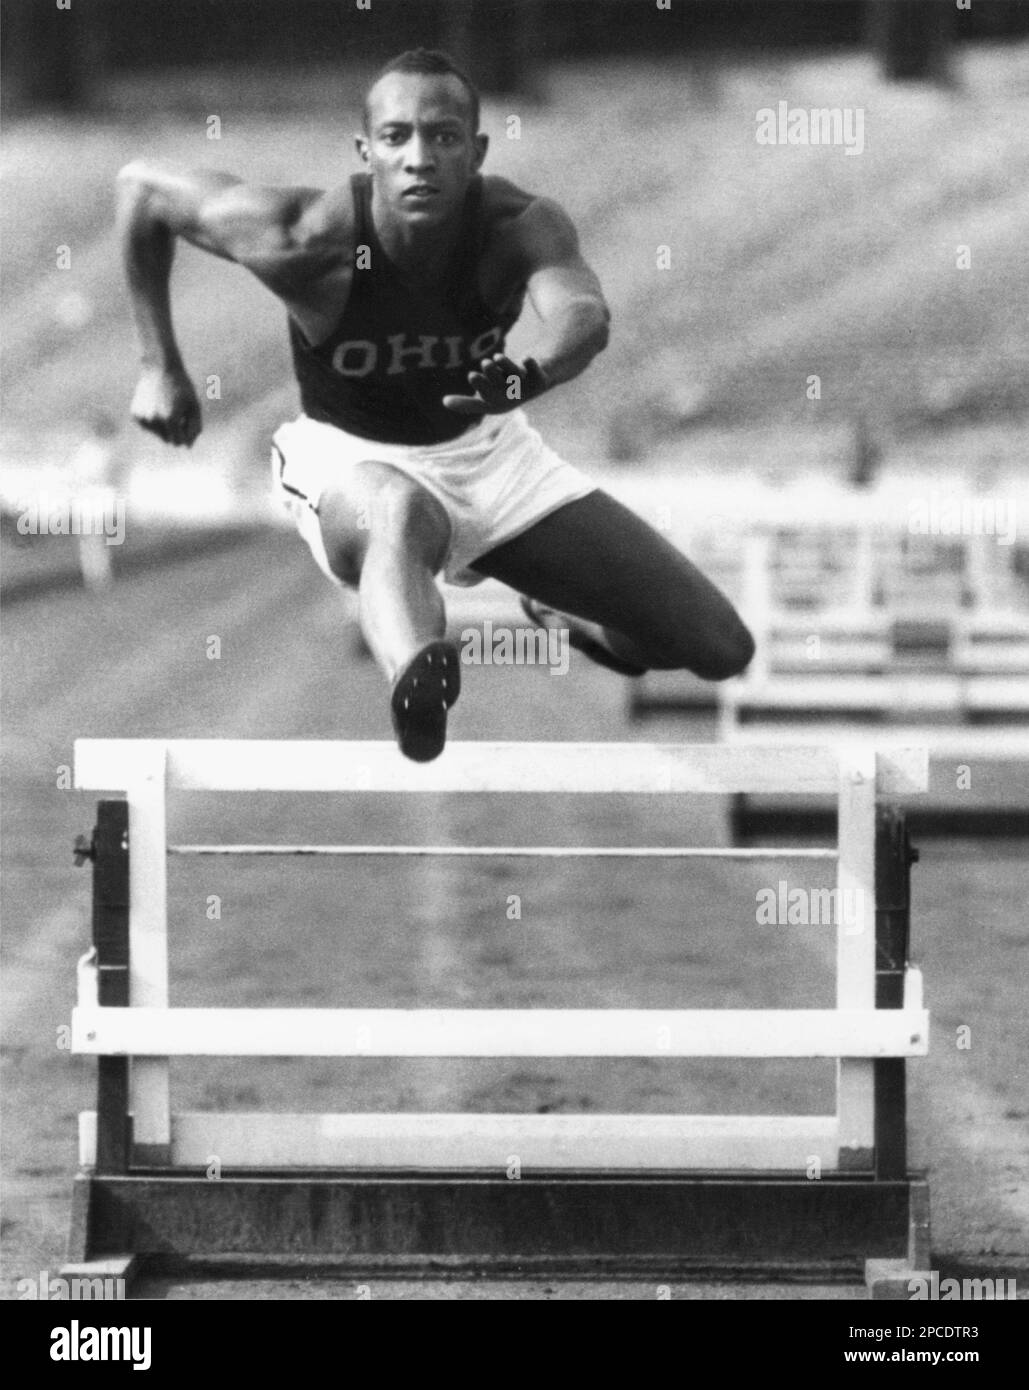 1936 CA , USA : le coureur noir James Cleveland JESSE OWENS ( 1913 - 1980 ) avec le maillot de L'ÉTAT DE L'OHIO. Était un athlète afro-américain sur piste et terrain. Il a participé aux Jeux olympiques d'été de 1936 à Berlin, en Allemagne, où il a gagné la renommée internationale en remportant quatre médailles d'or. - OLIMPIADE - OLIMPIADI di BERLINO - OLYMPIA - FOTO STORICHE - HISTOIRE - portrait - ritrato - SPORT - ATLETA DI COORE - athlet - ATLETICA - salto ad ostacoli - corsa --- Archivio GBB Banque D'Images